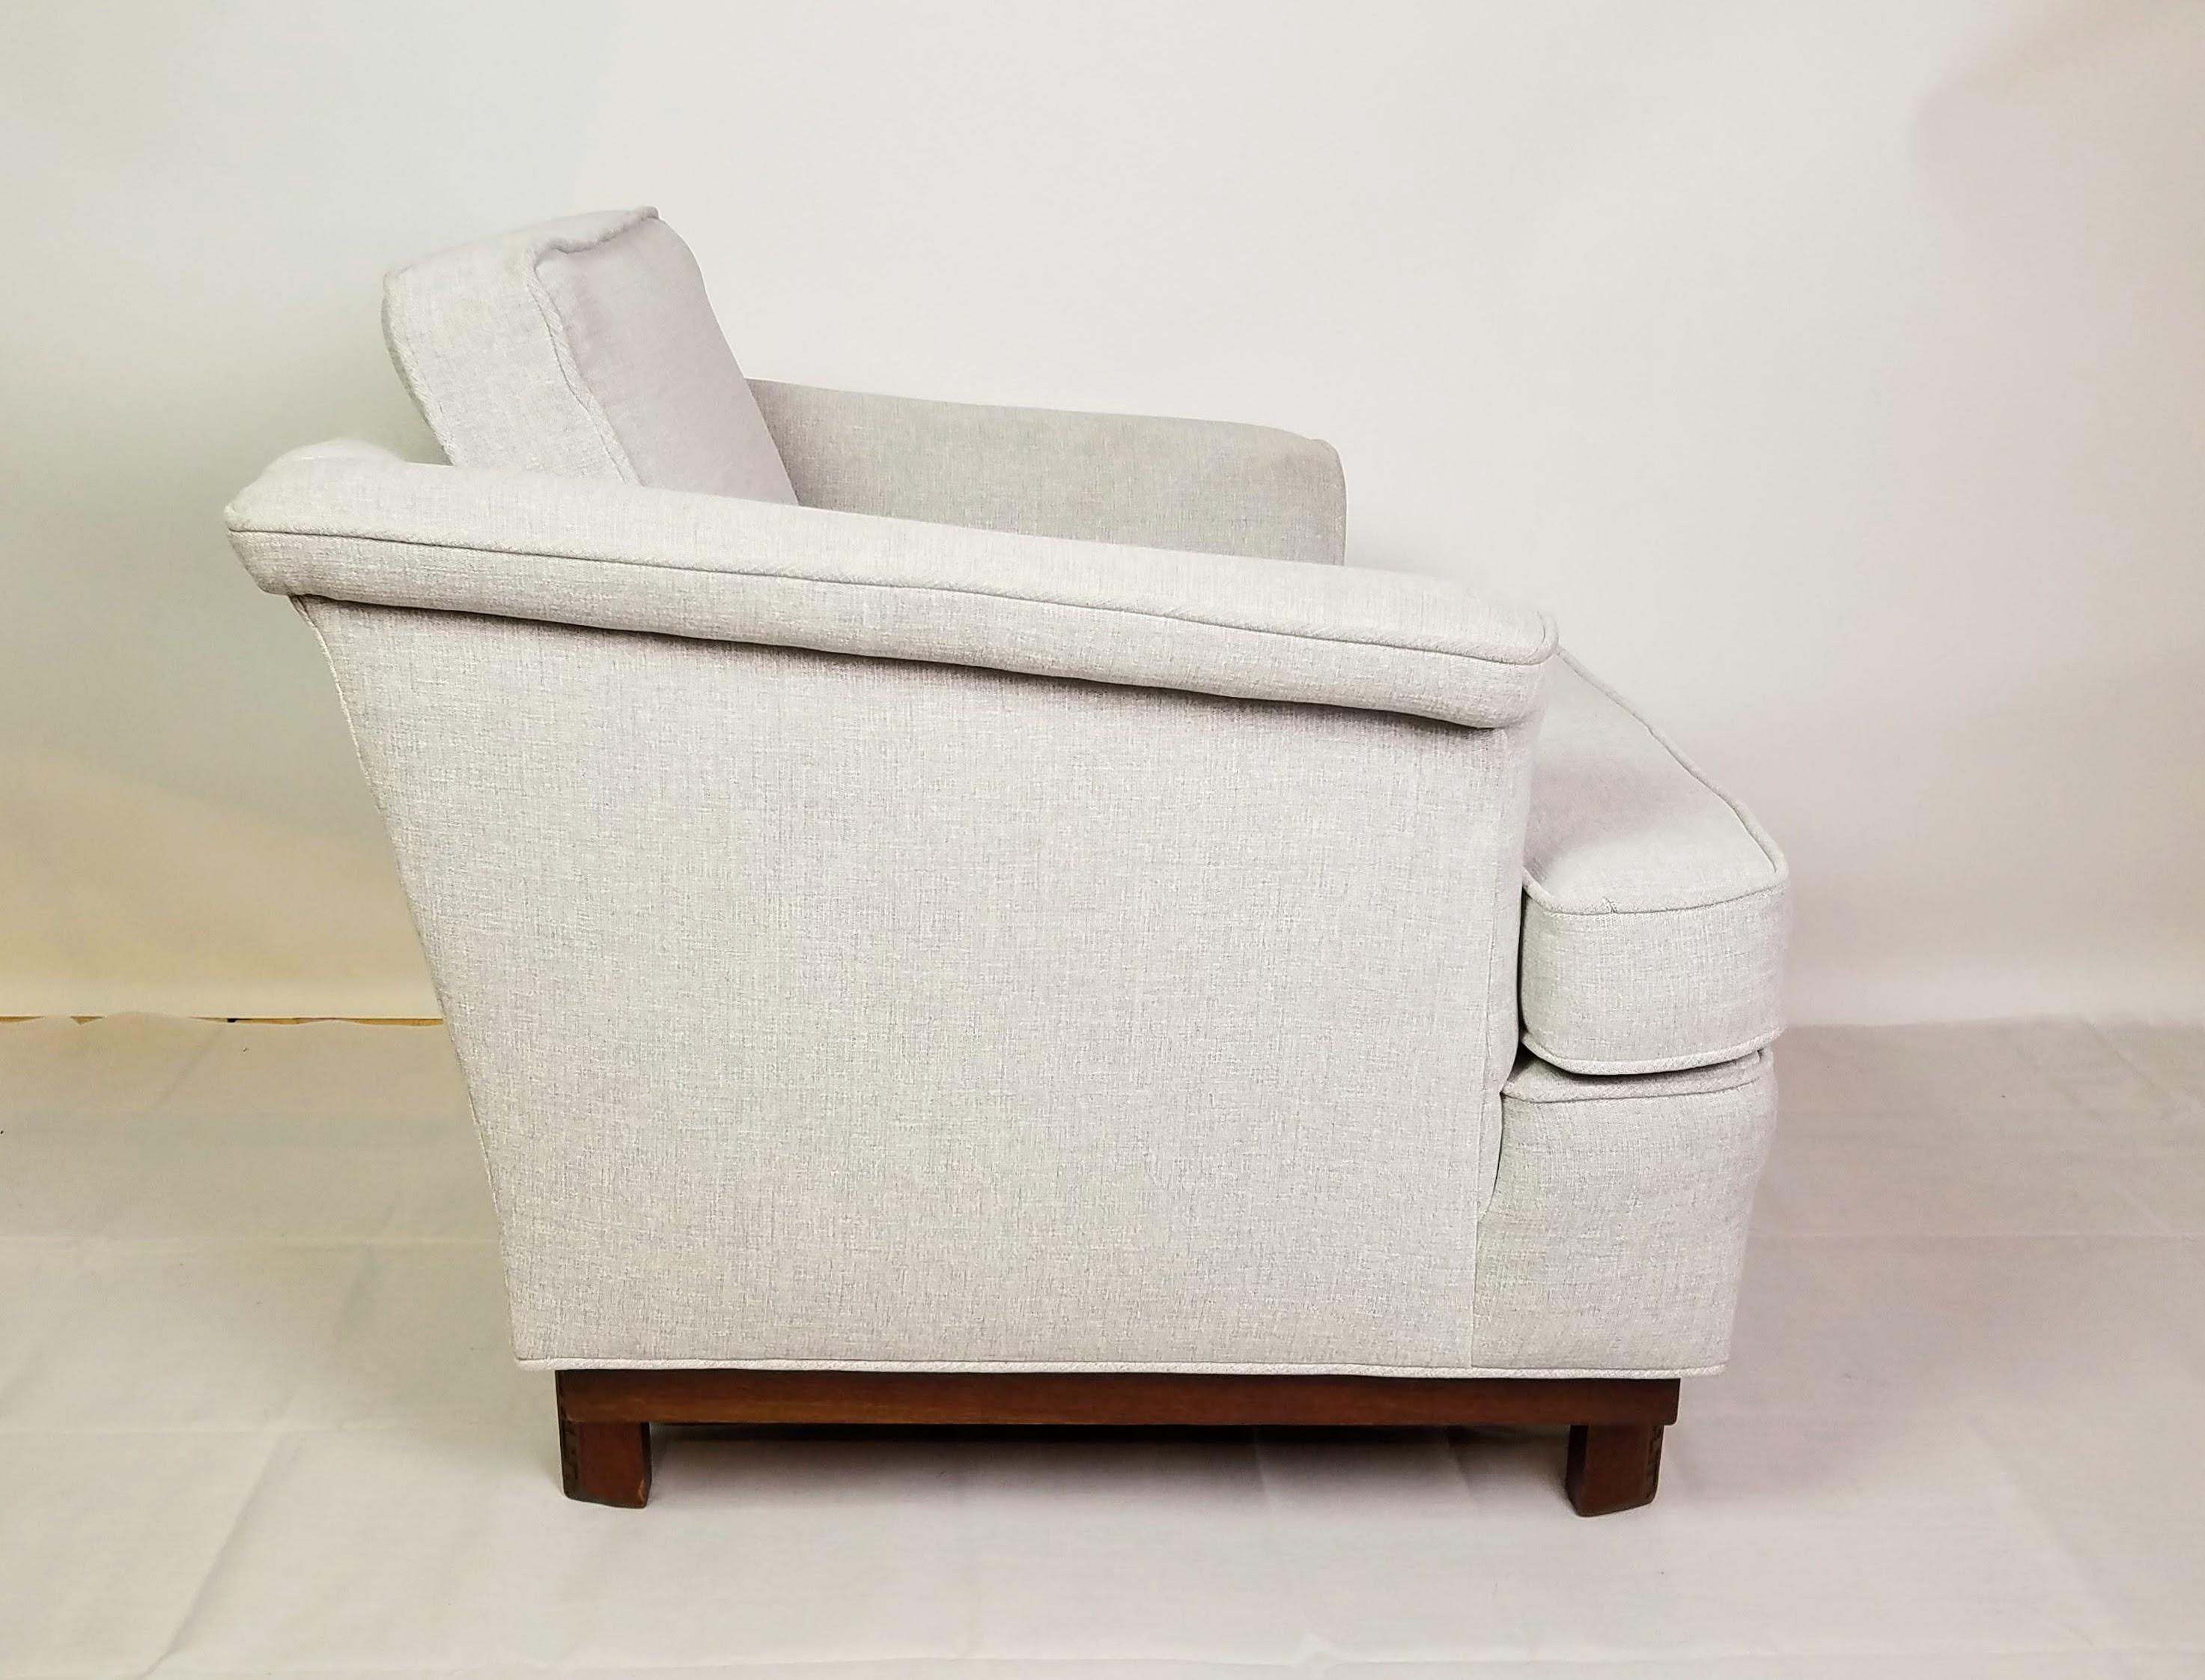 Klassischer Mahagoni-Sessel von Frank Lloyd Wright, entworfen für seine Taliesin-Linie, hergestellt von Heritage Henredon in den Jahren 1955/56.
Der massive Mahagonisockel ist in sehr gutem Zustand mit kleinen Ausbesserungen. 
Die Polsterung des